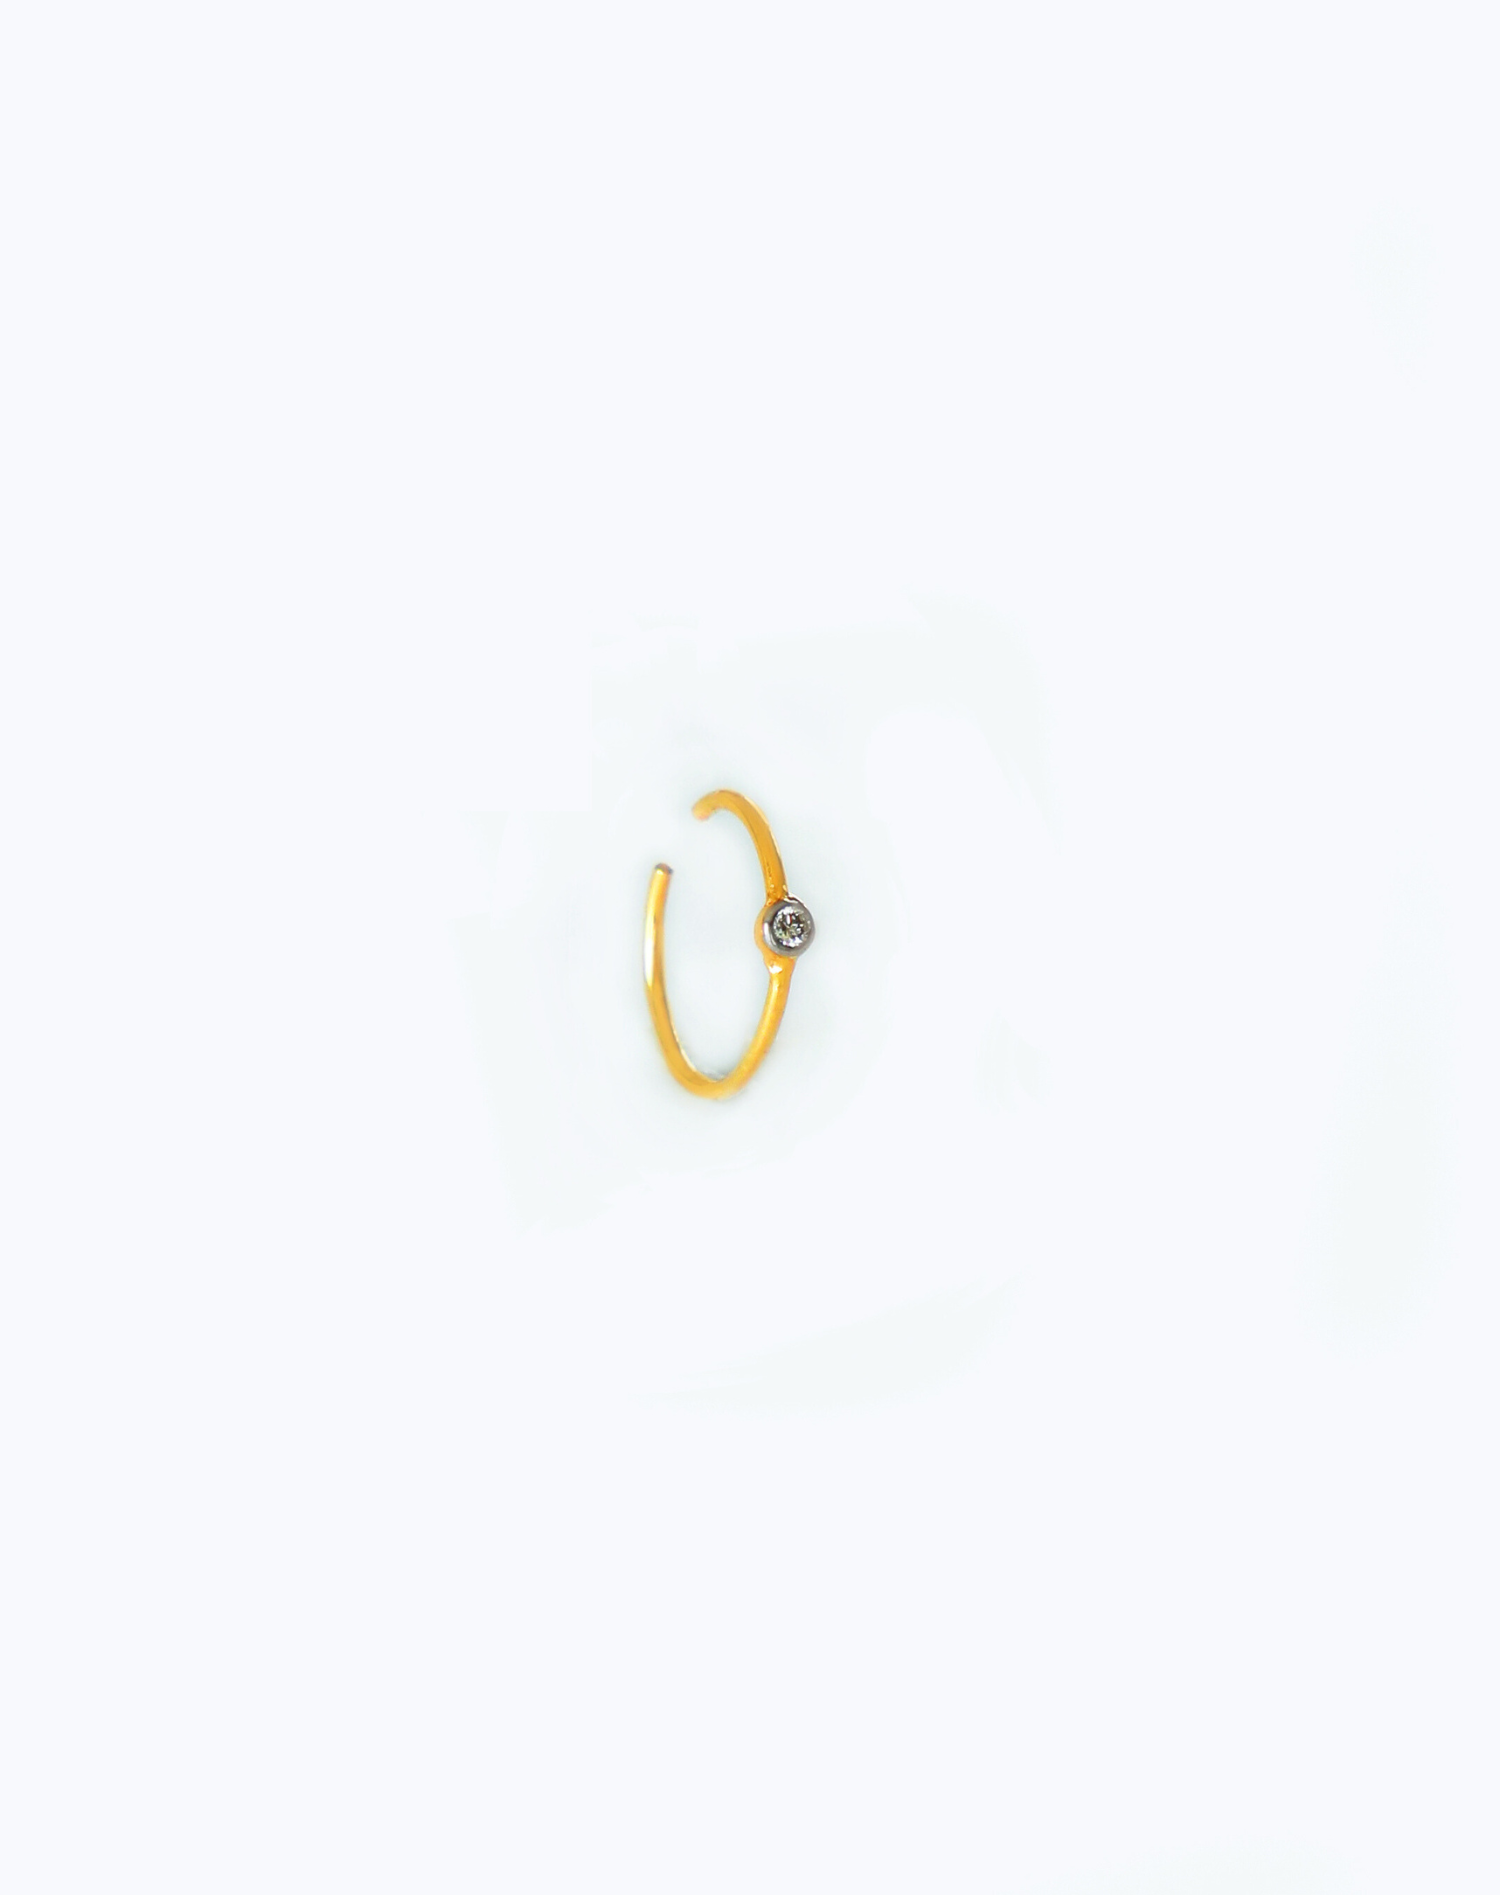 Buy Gold & Diamond Nose Ring in India starting range ₹6500